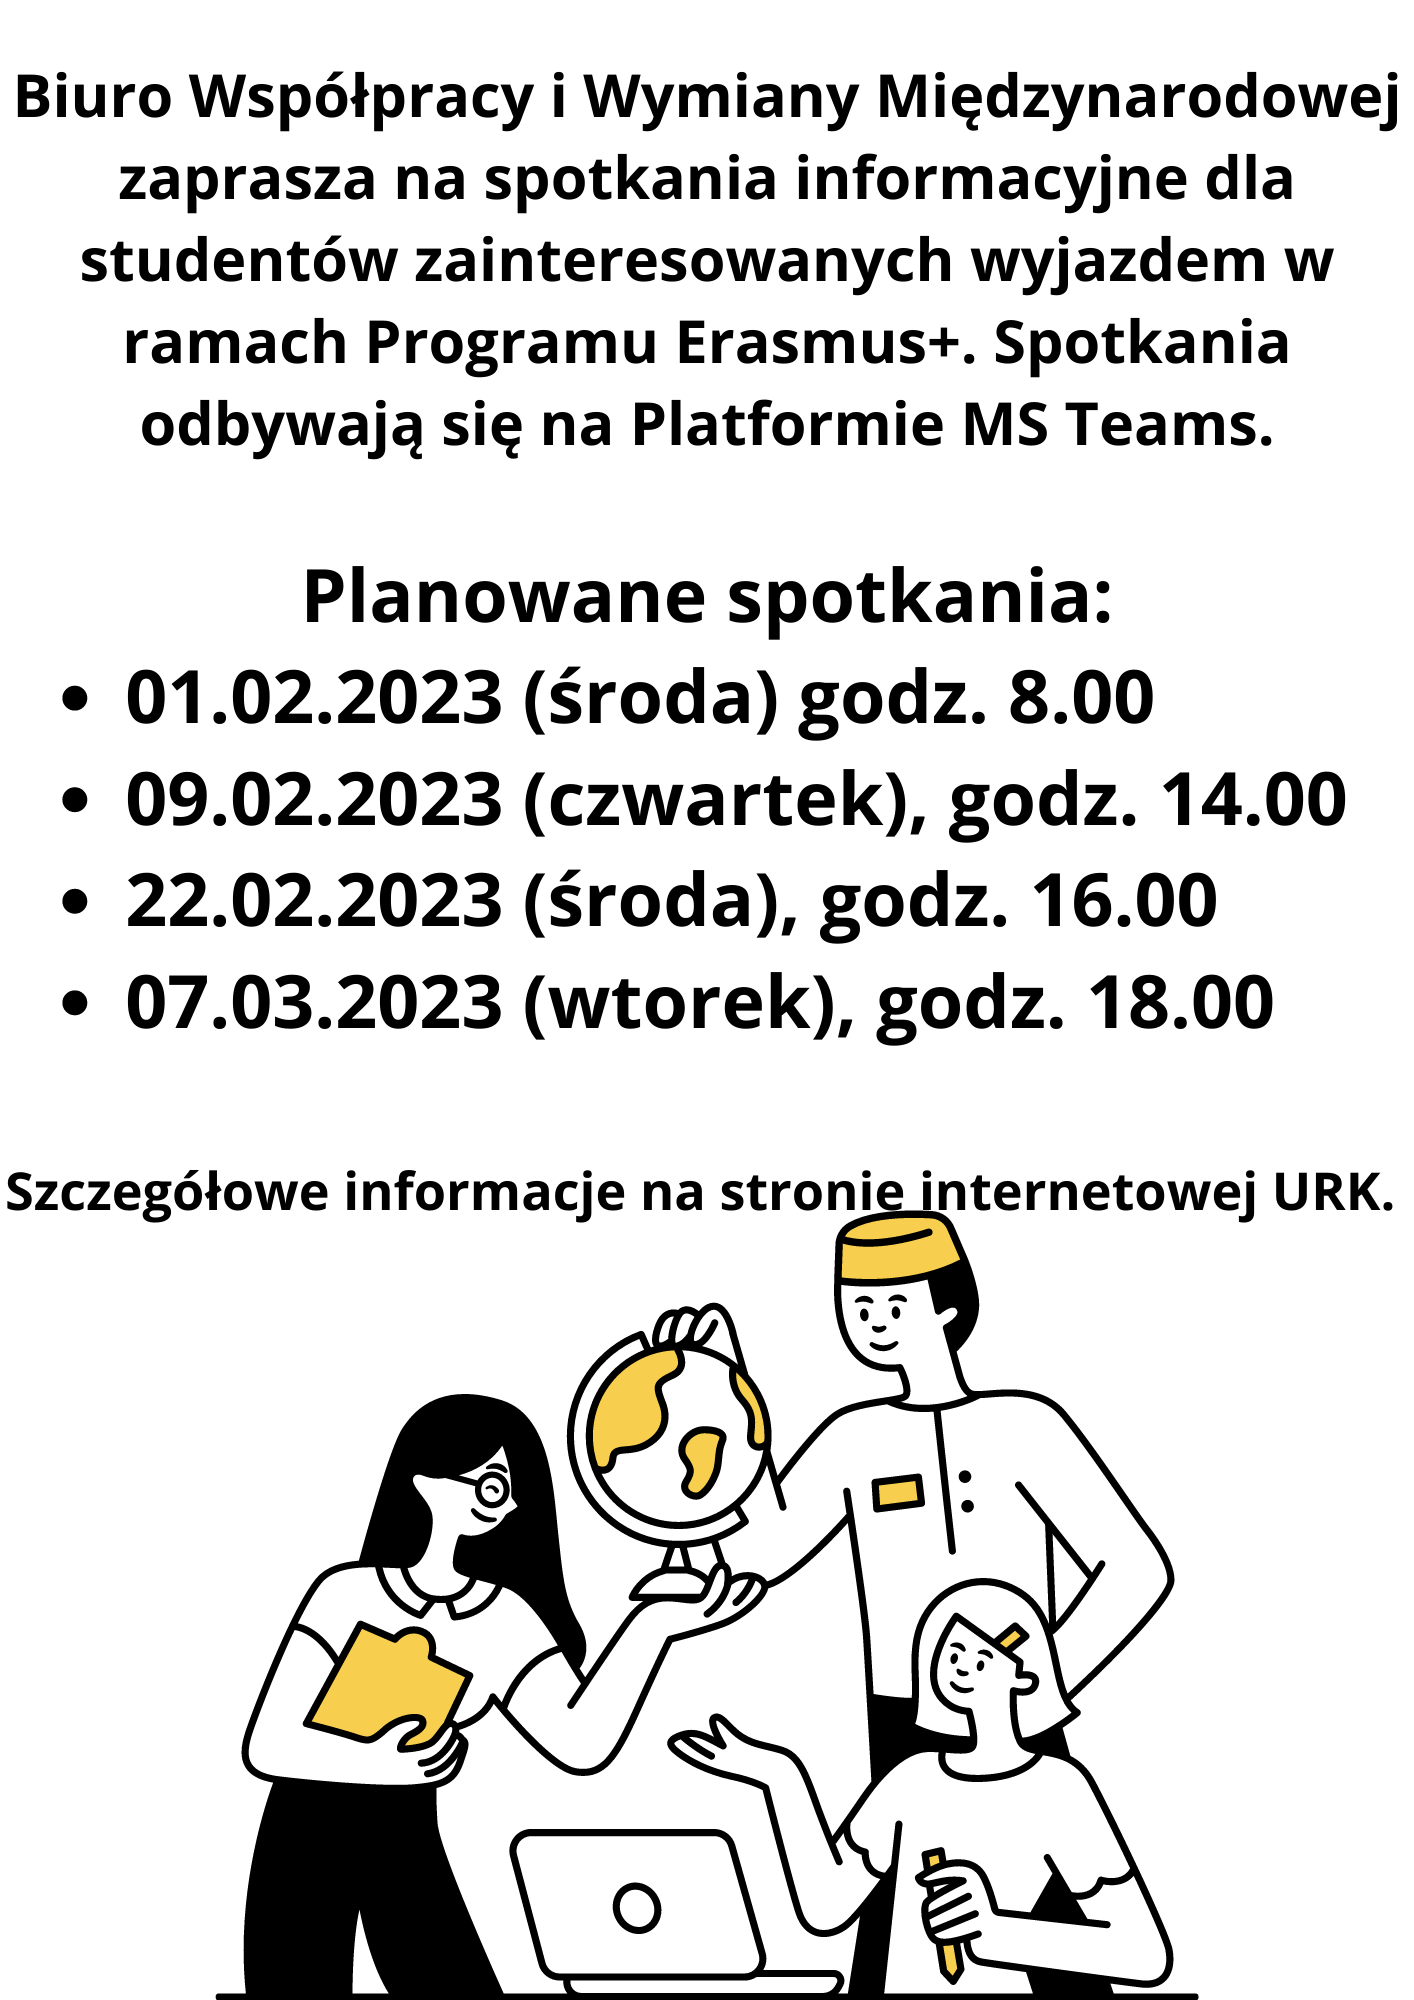 Zapraszamy na spotkania on-line wszystkich zainteresowanych programem Erasmus+!